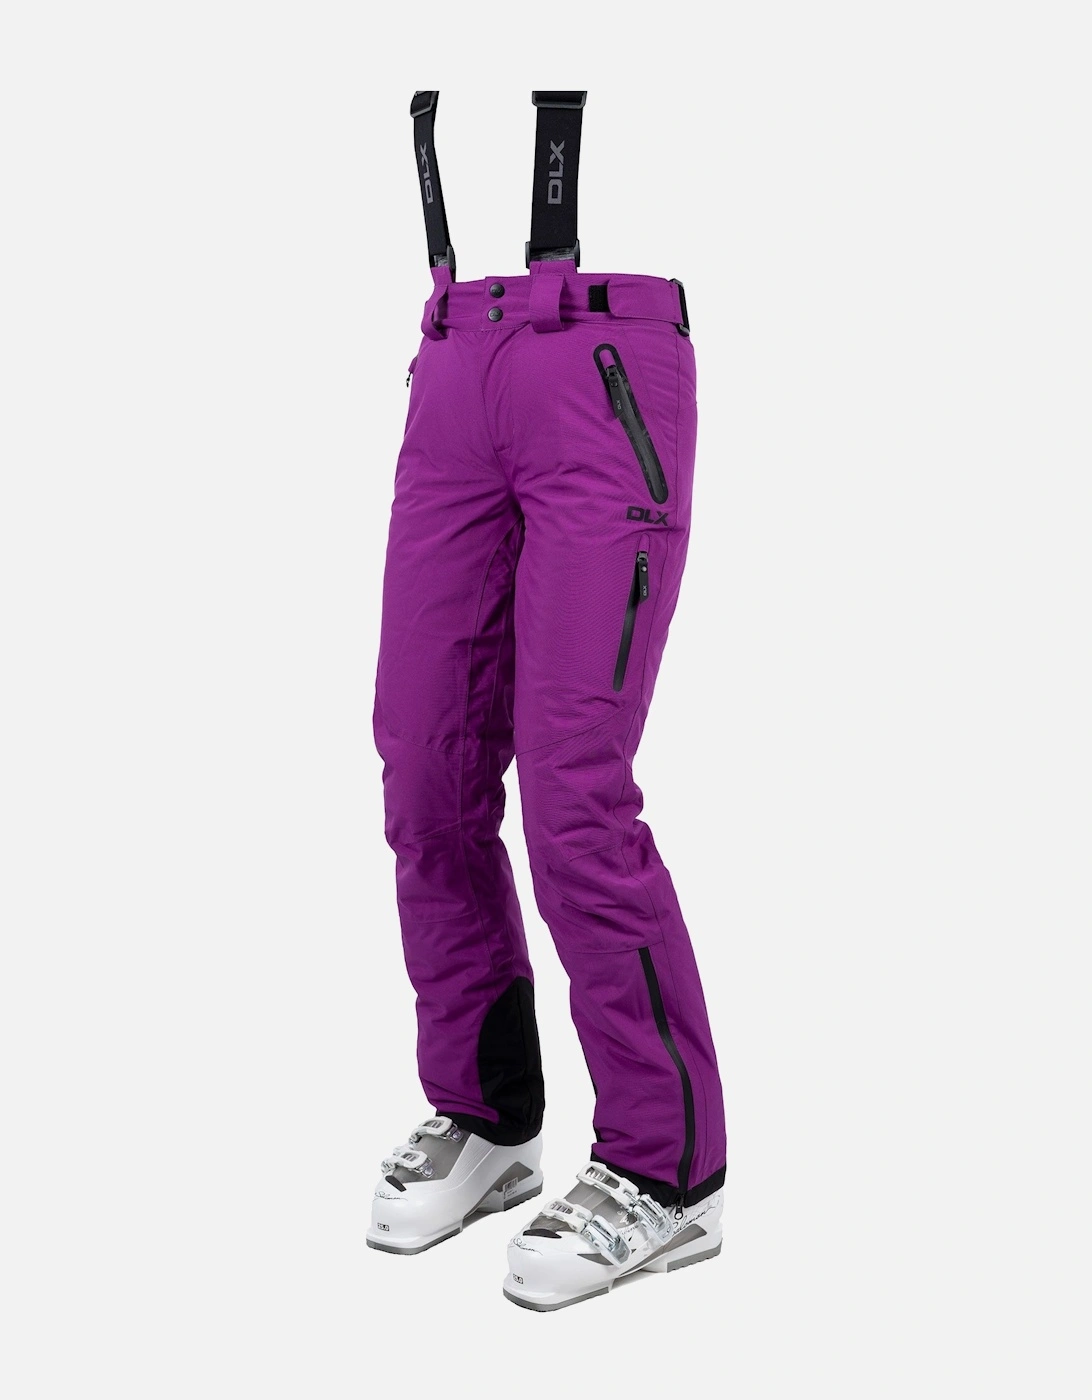 Womens/Ladies Marisol II DLX Waterproof Ski Trousers, 4 of 3